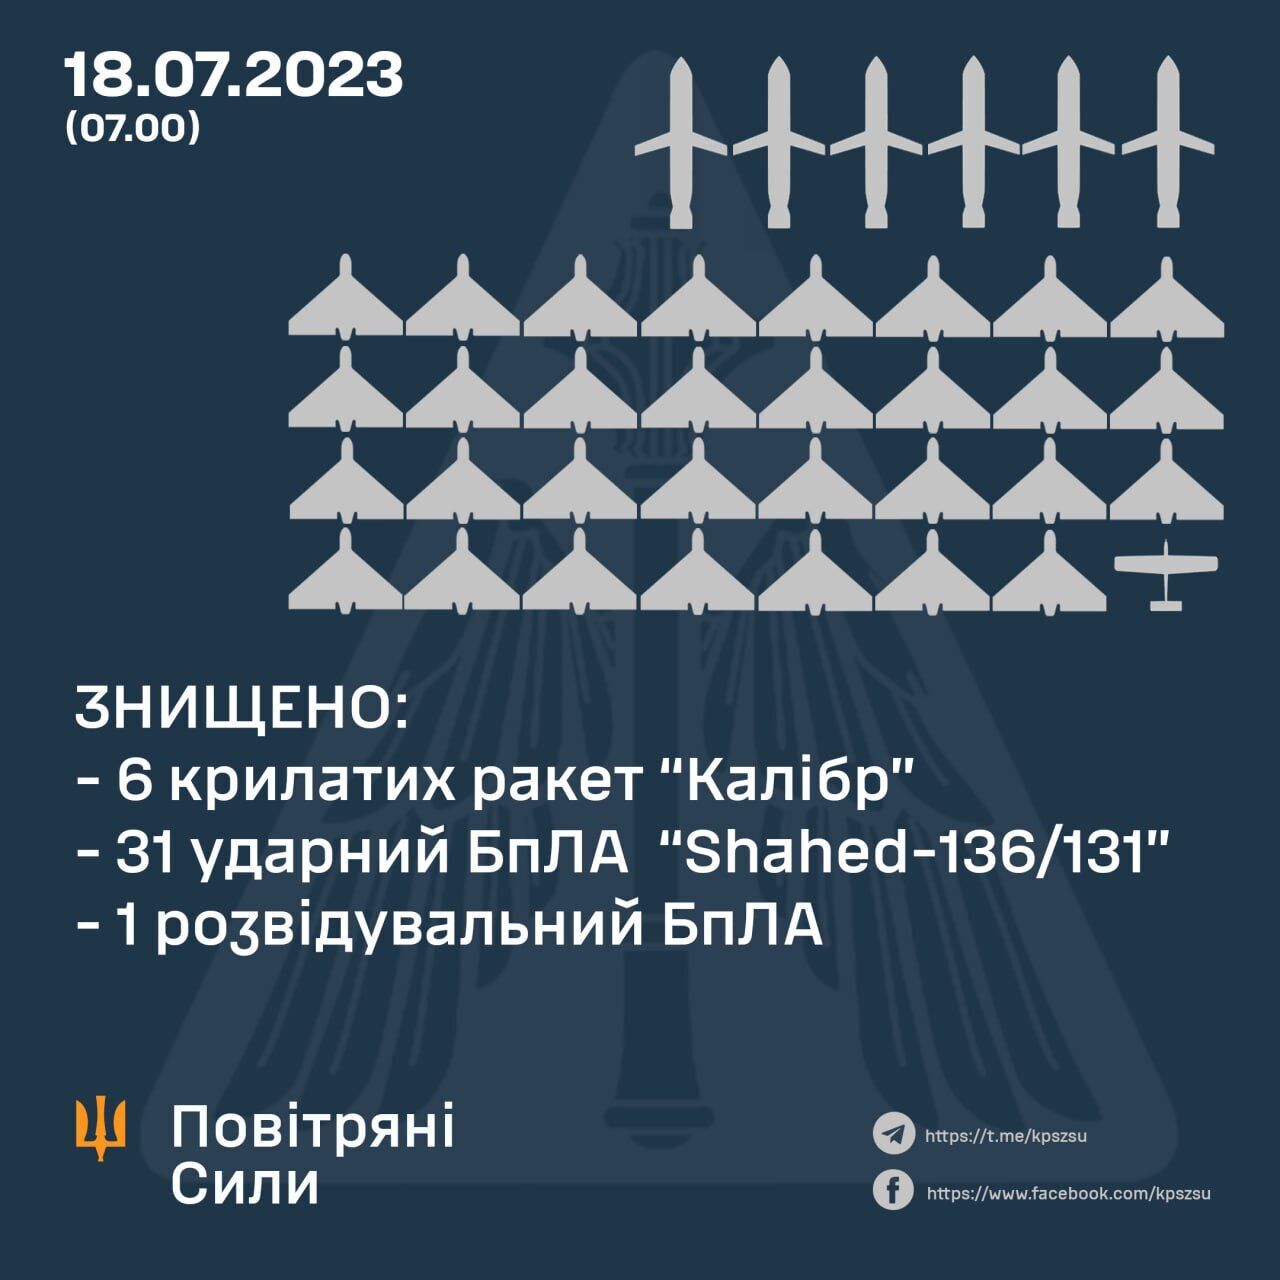 Россия ночью атаковала юг и восток Украины: силы ПВО сбили шесть "Калибров", 31 "Шахед" и разведывательный БПЛА